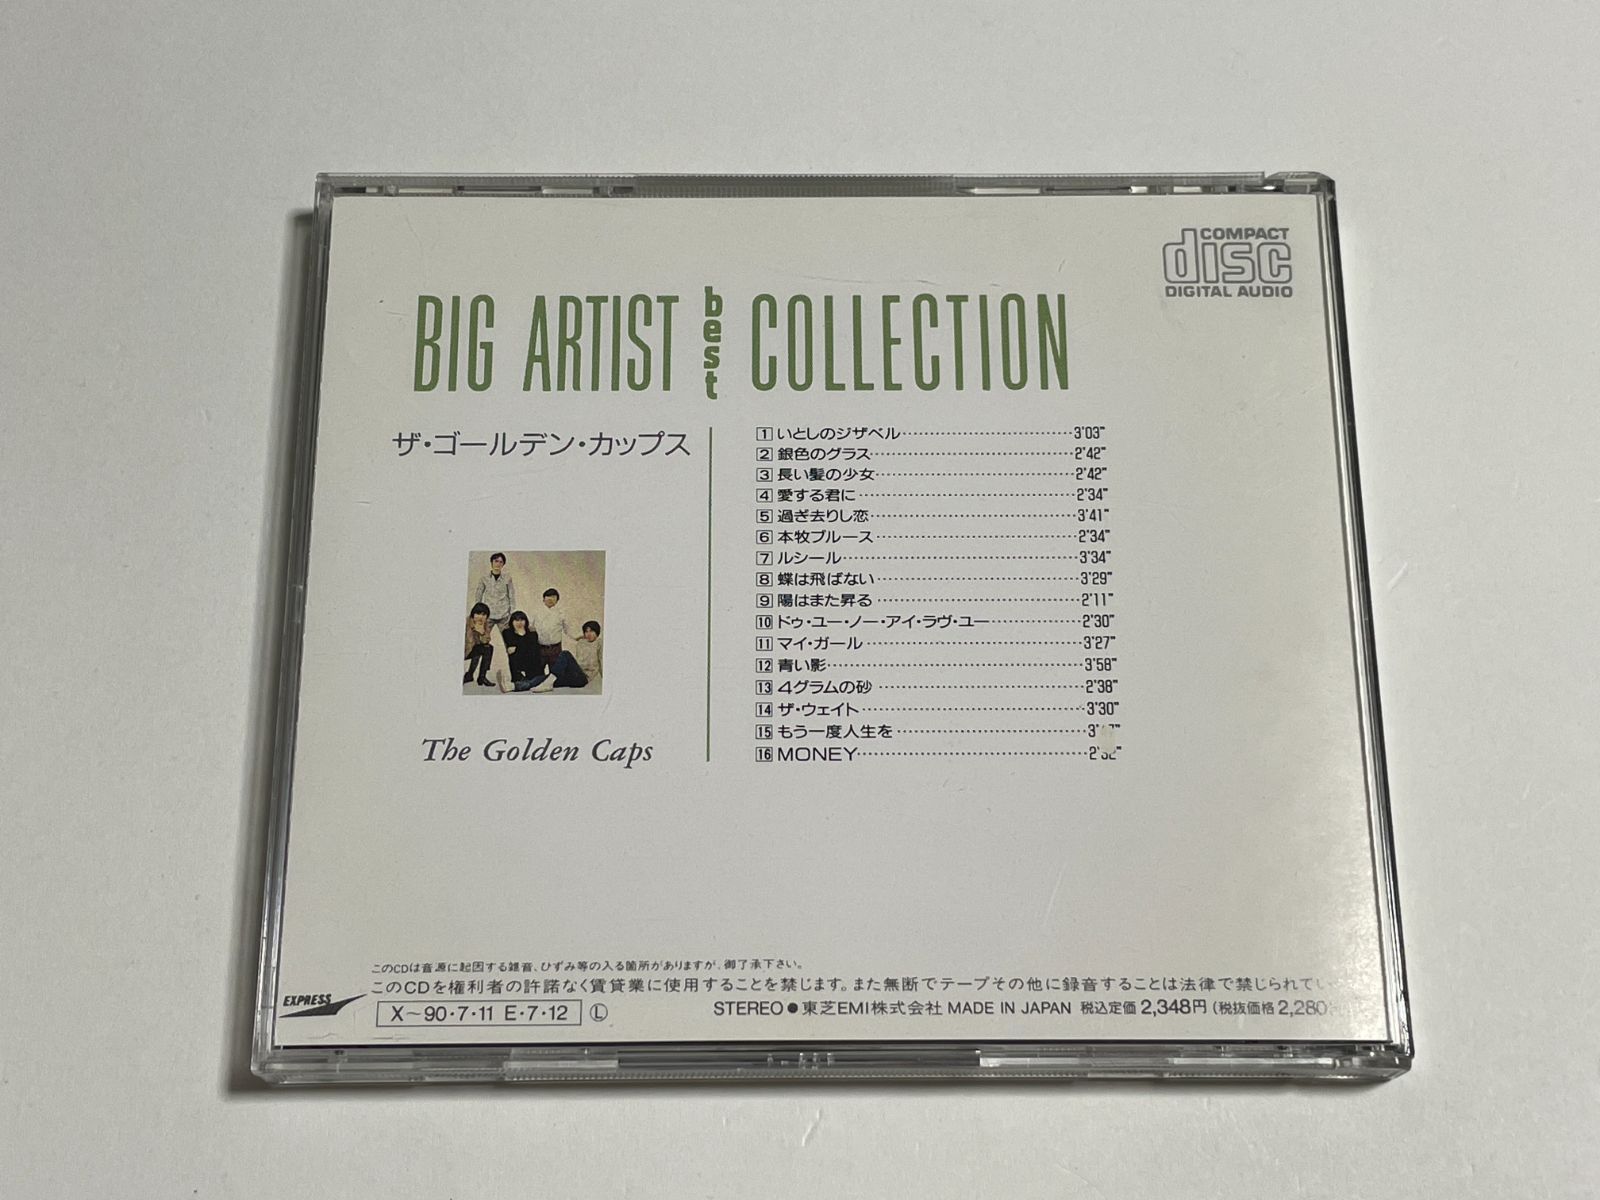 CD『ザ・ゴールデン・カップス / ビッグ・アーティスト・コレクション』CT25-9037 ベスト・アルバム 全16曲収録